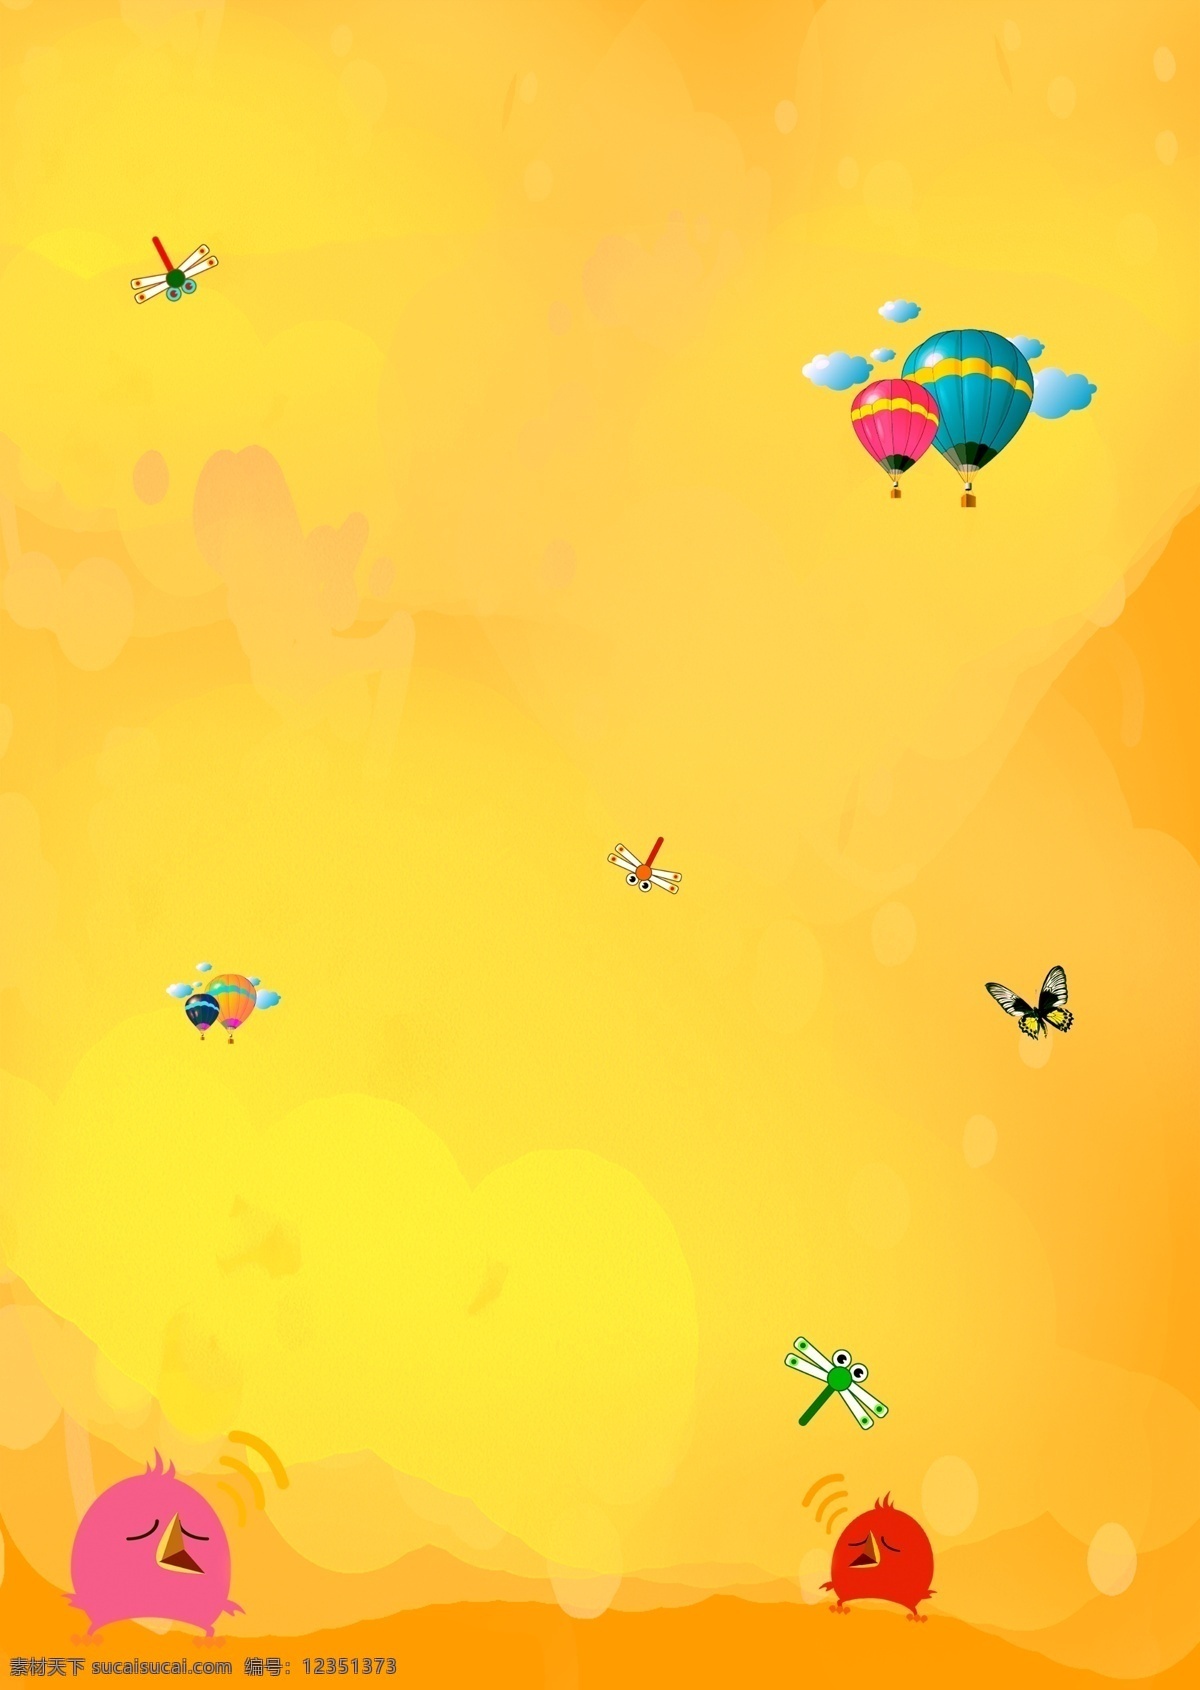 彩色花式底图 彩色 彩色图片 花式 底图 蜻蜓 鸟 bird 气球 热气球 底纹 边框 样式 卡通设计